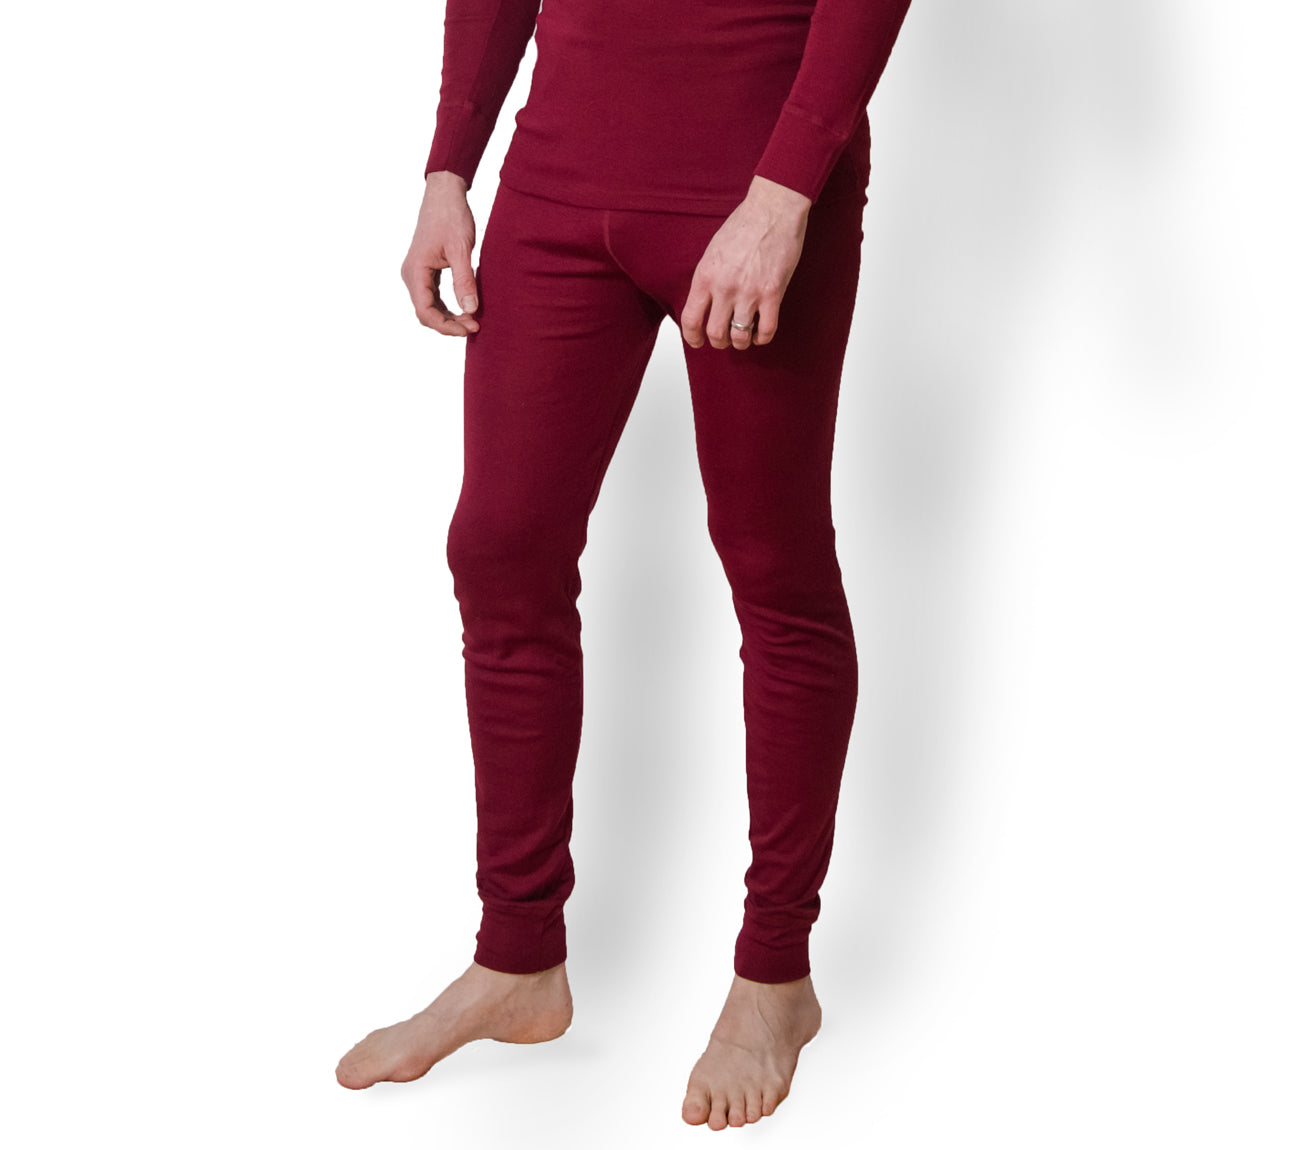 OUTLET Hocosa Men or Women's Organic Wool/Silk Long-Underwear Pants